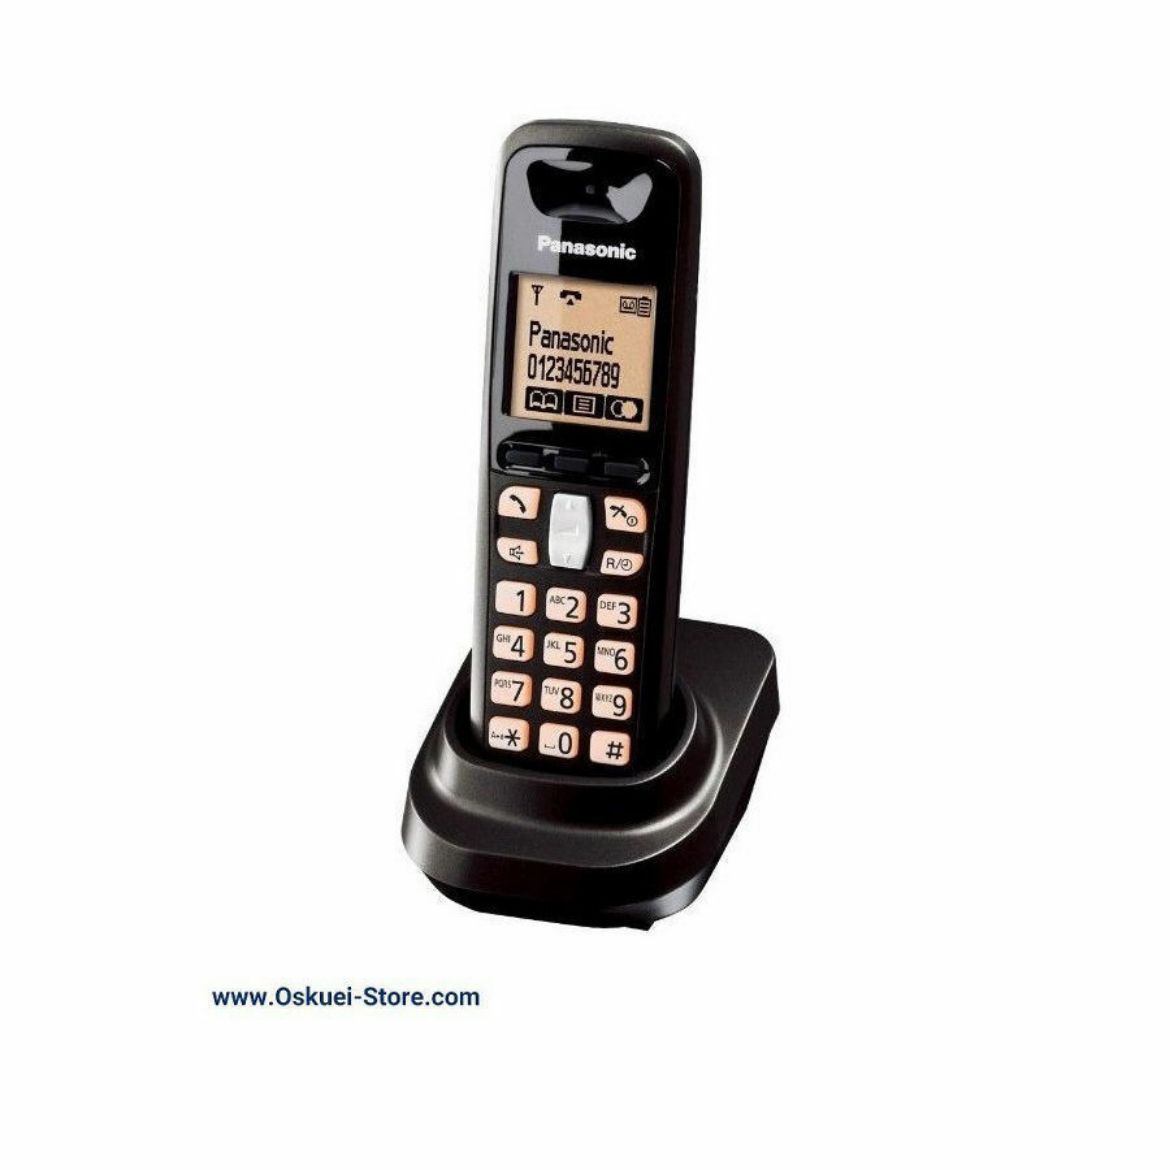 Panasonic KX-TGA641 Cordless Telephone Black